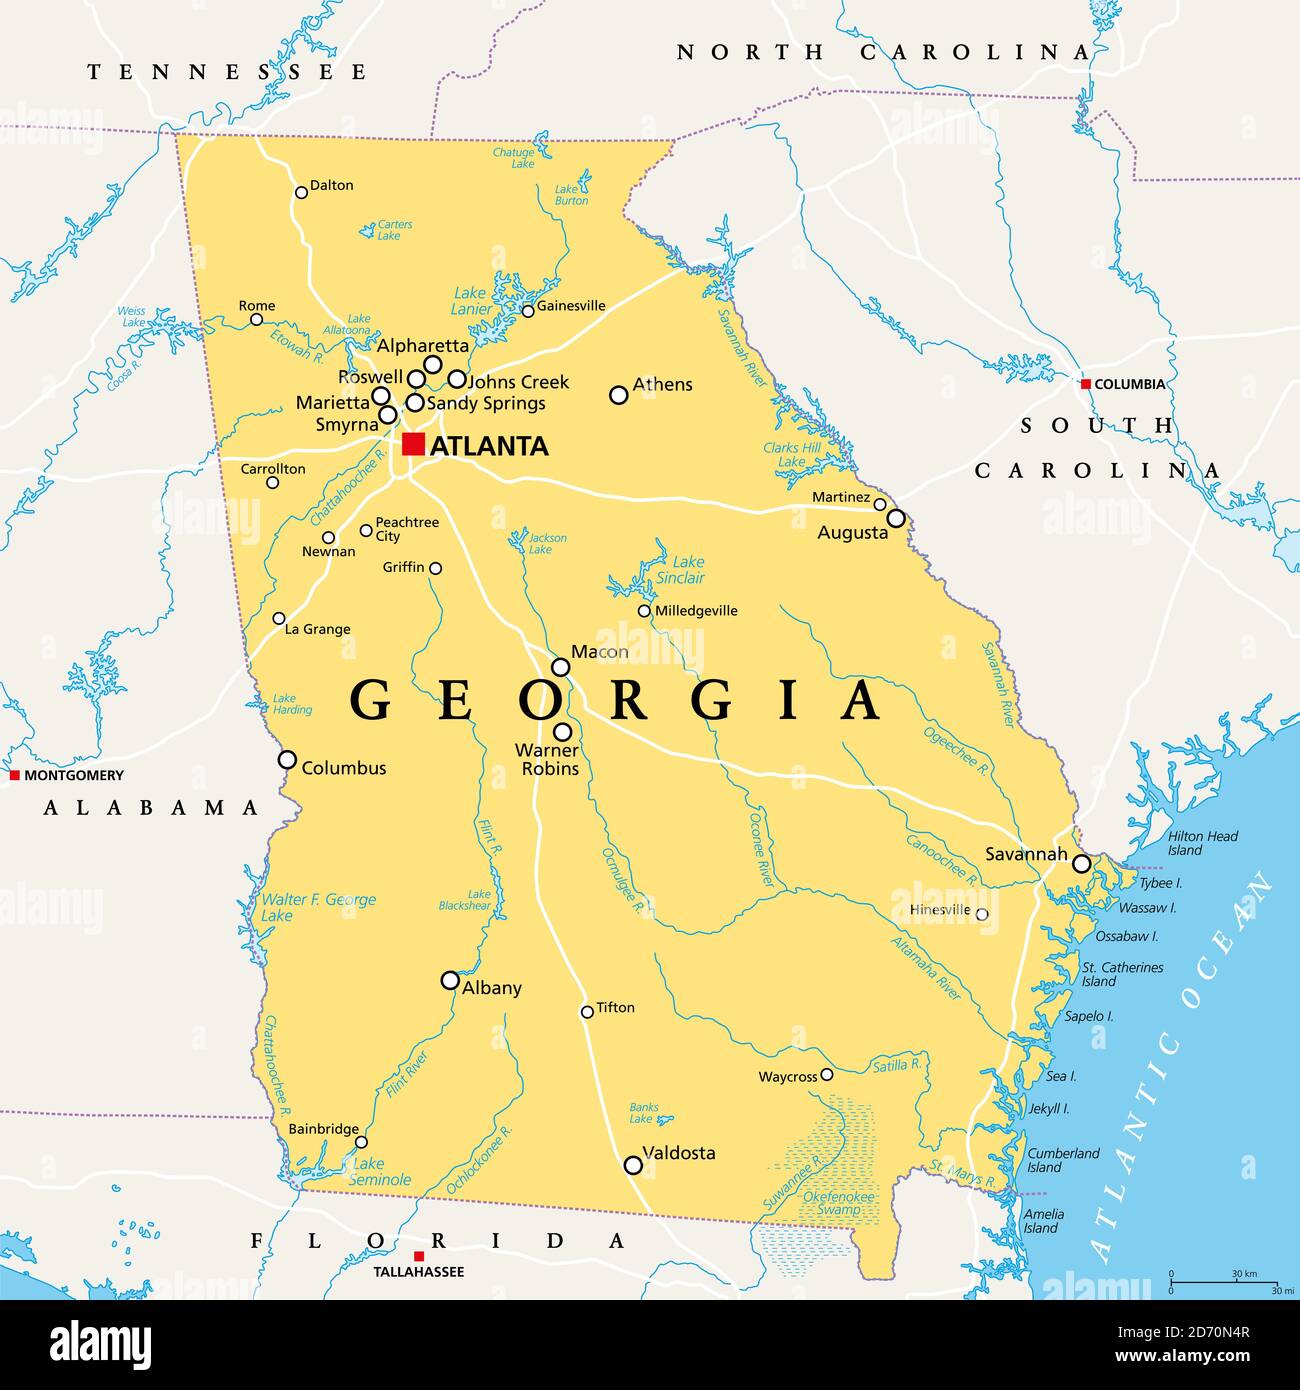 Show Me A Map Of Atlanta Georgia 